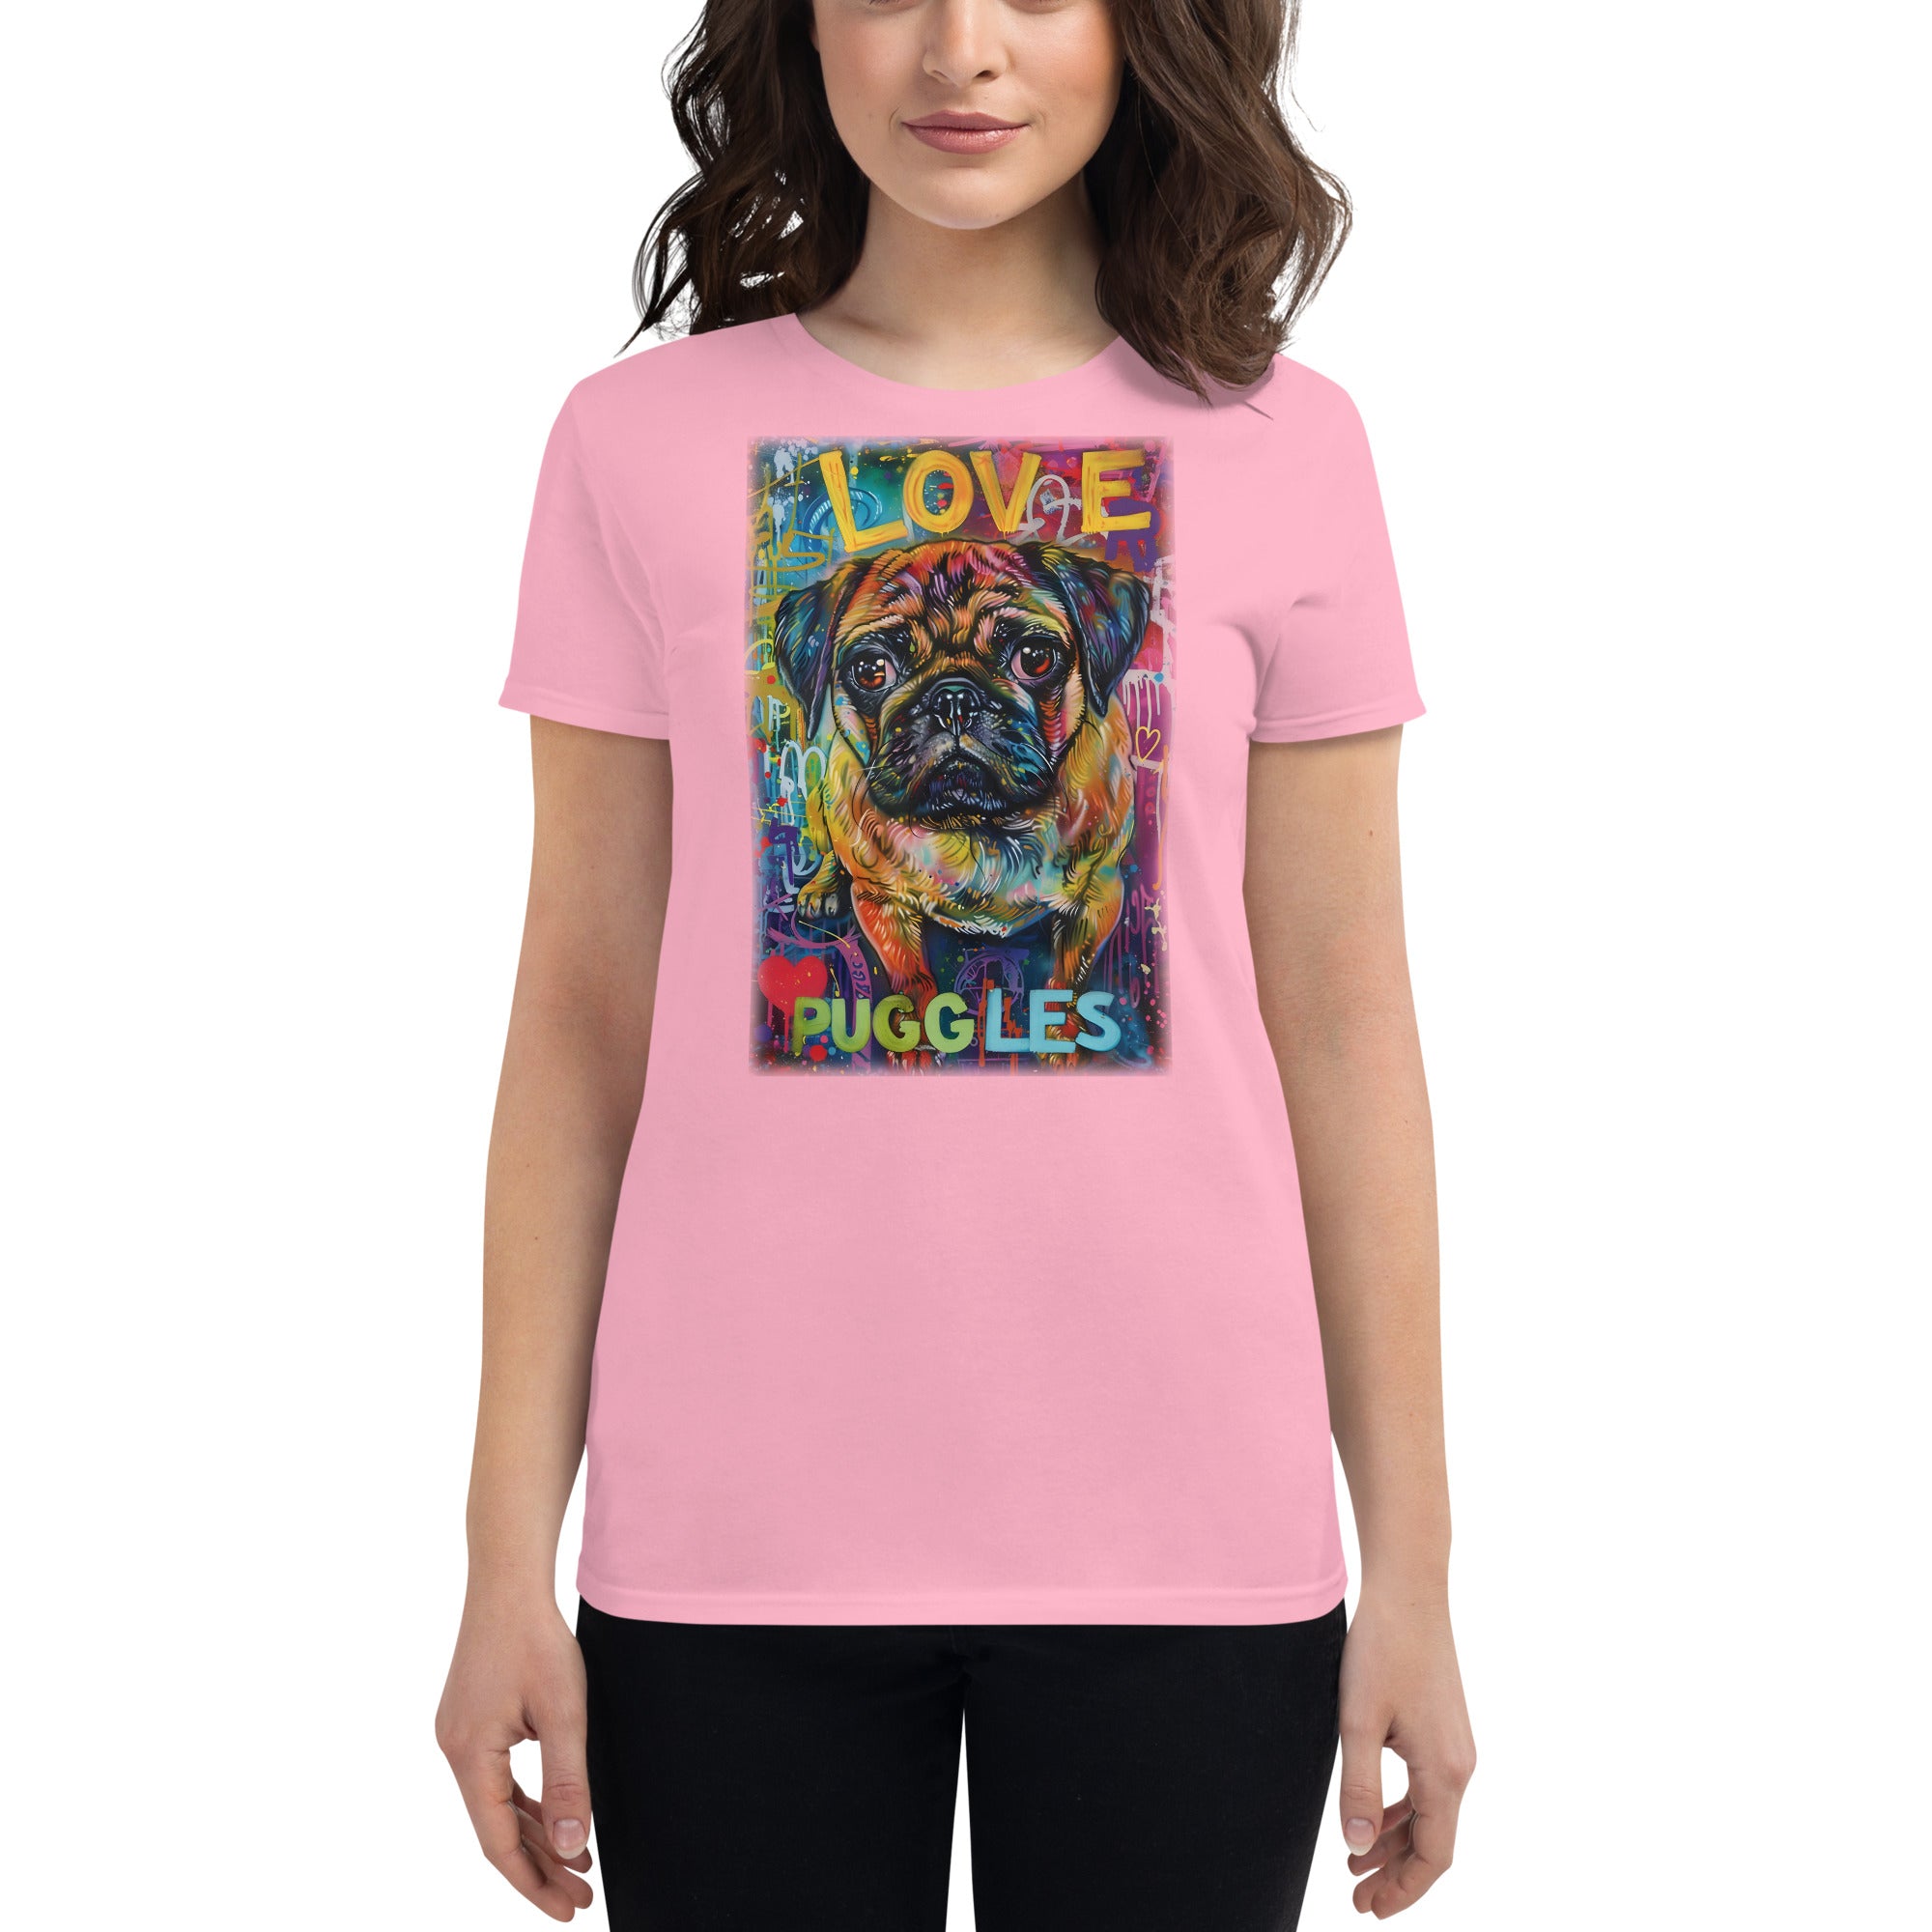 Puggle Women's short sleeve t-shirt